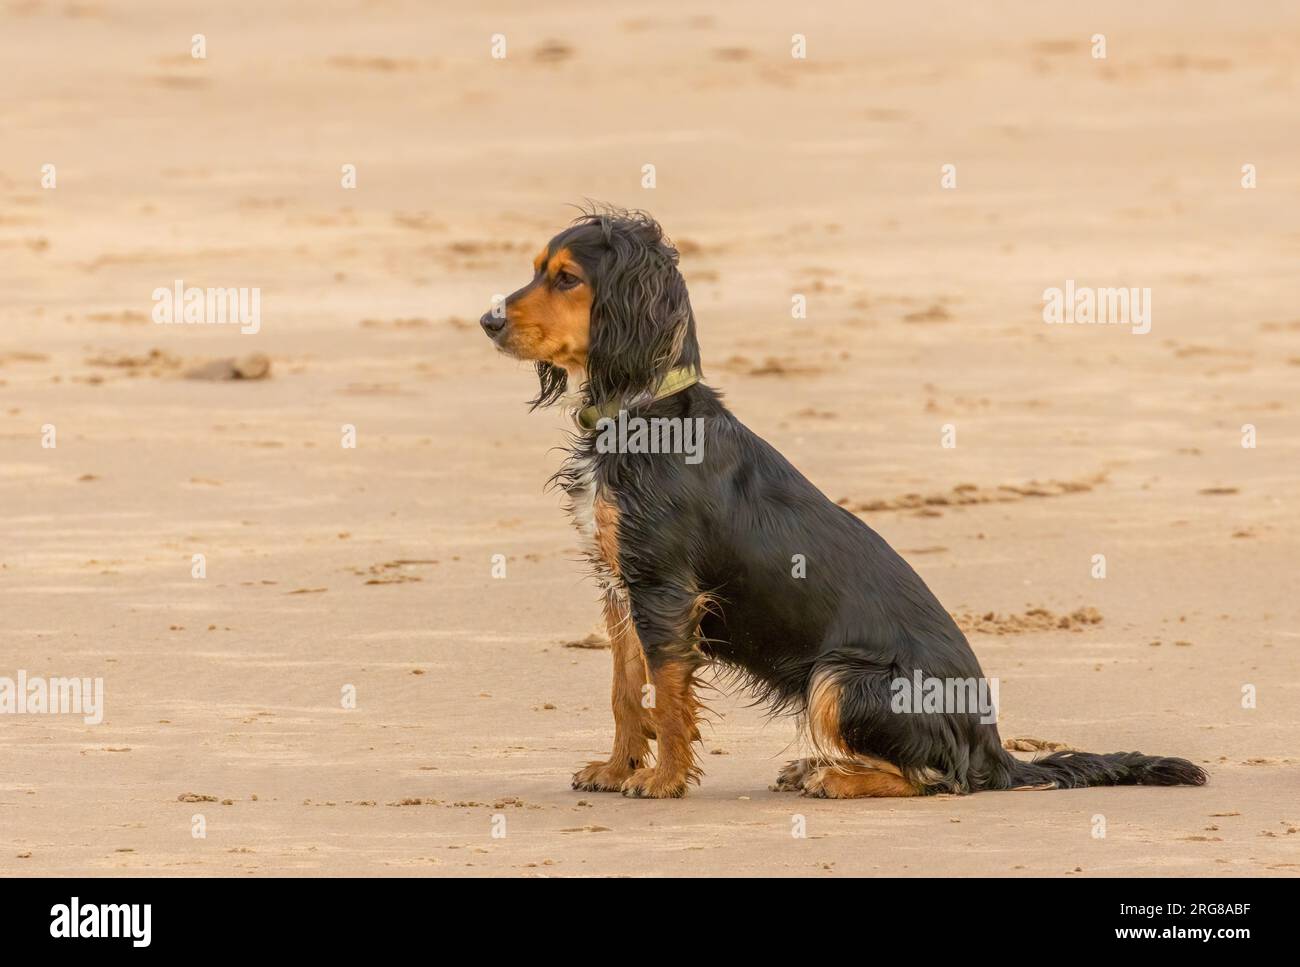 Si è comportato bene, nero, uno spaniel abbronzato seduto all'attenzione sulla sabbia di una spiaggia Foto Stock